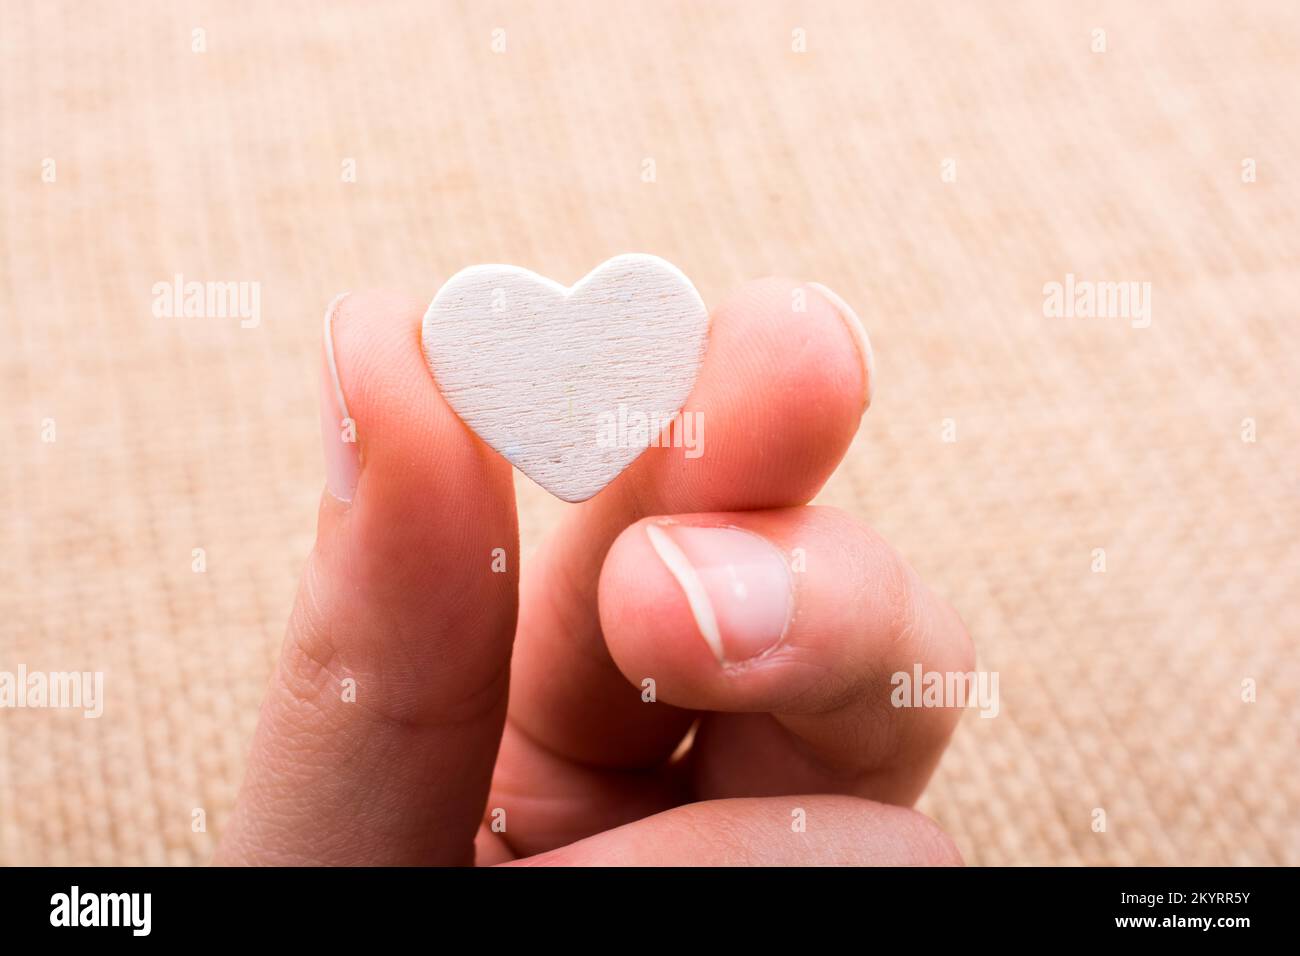 Objet en forme de coeur à la main sur toile Banque D'Images